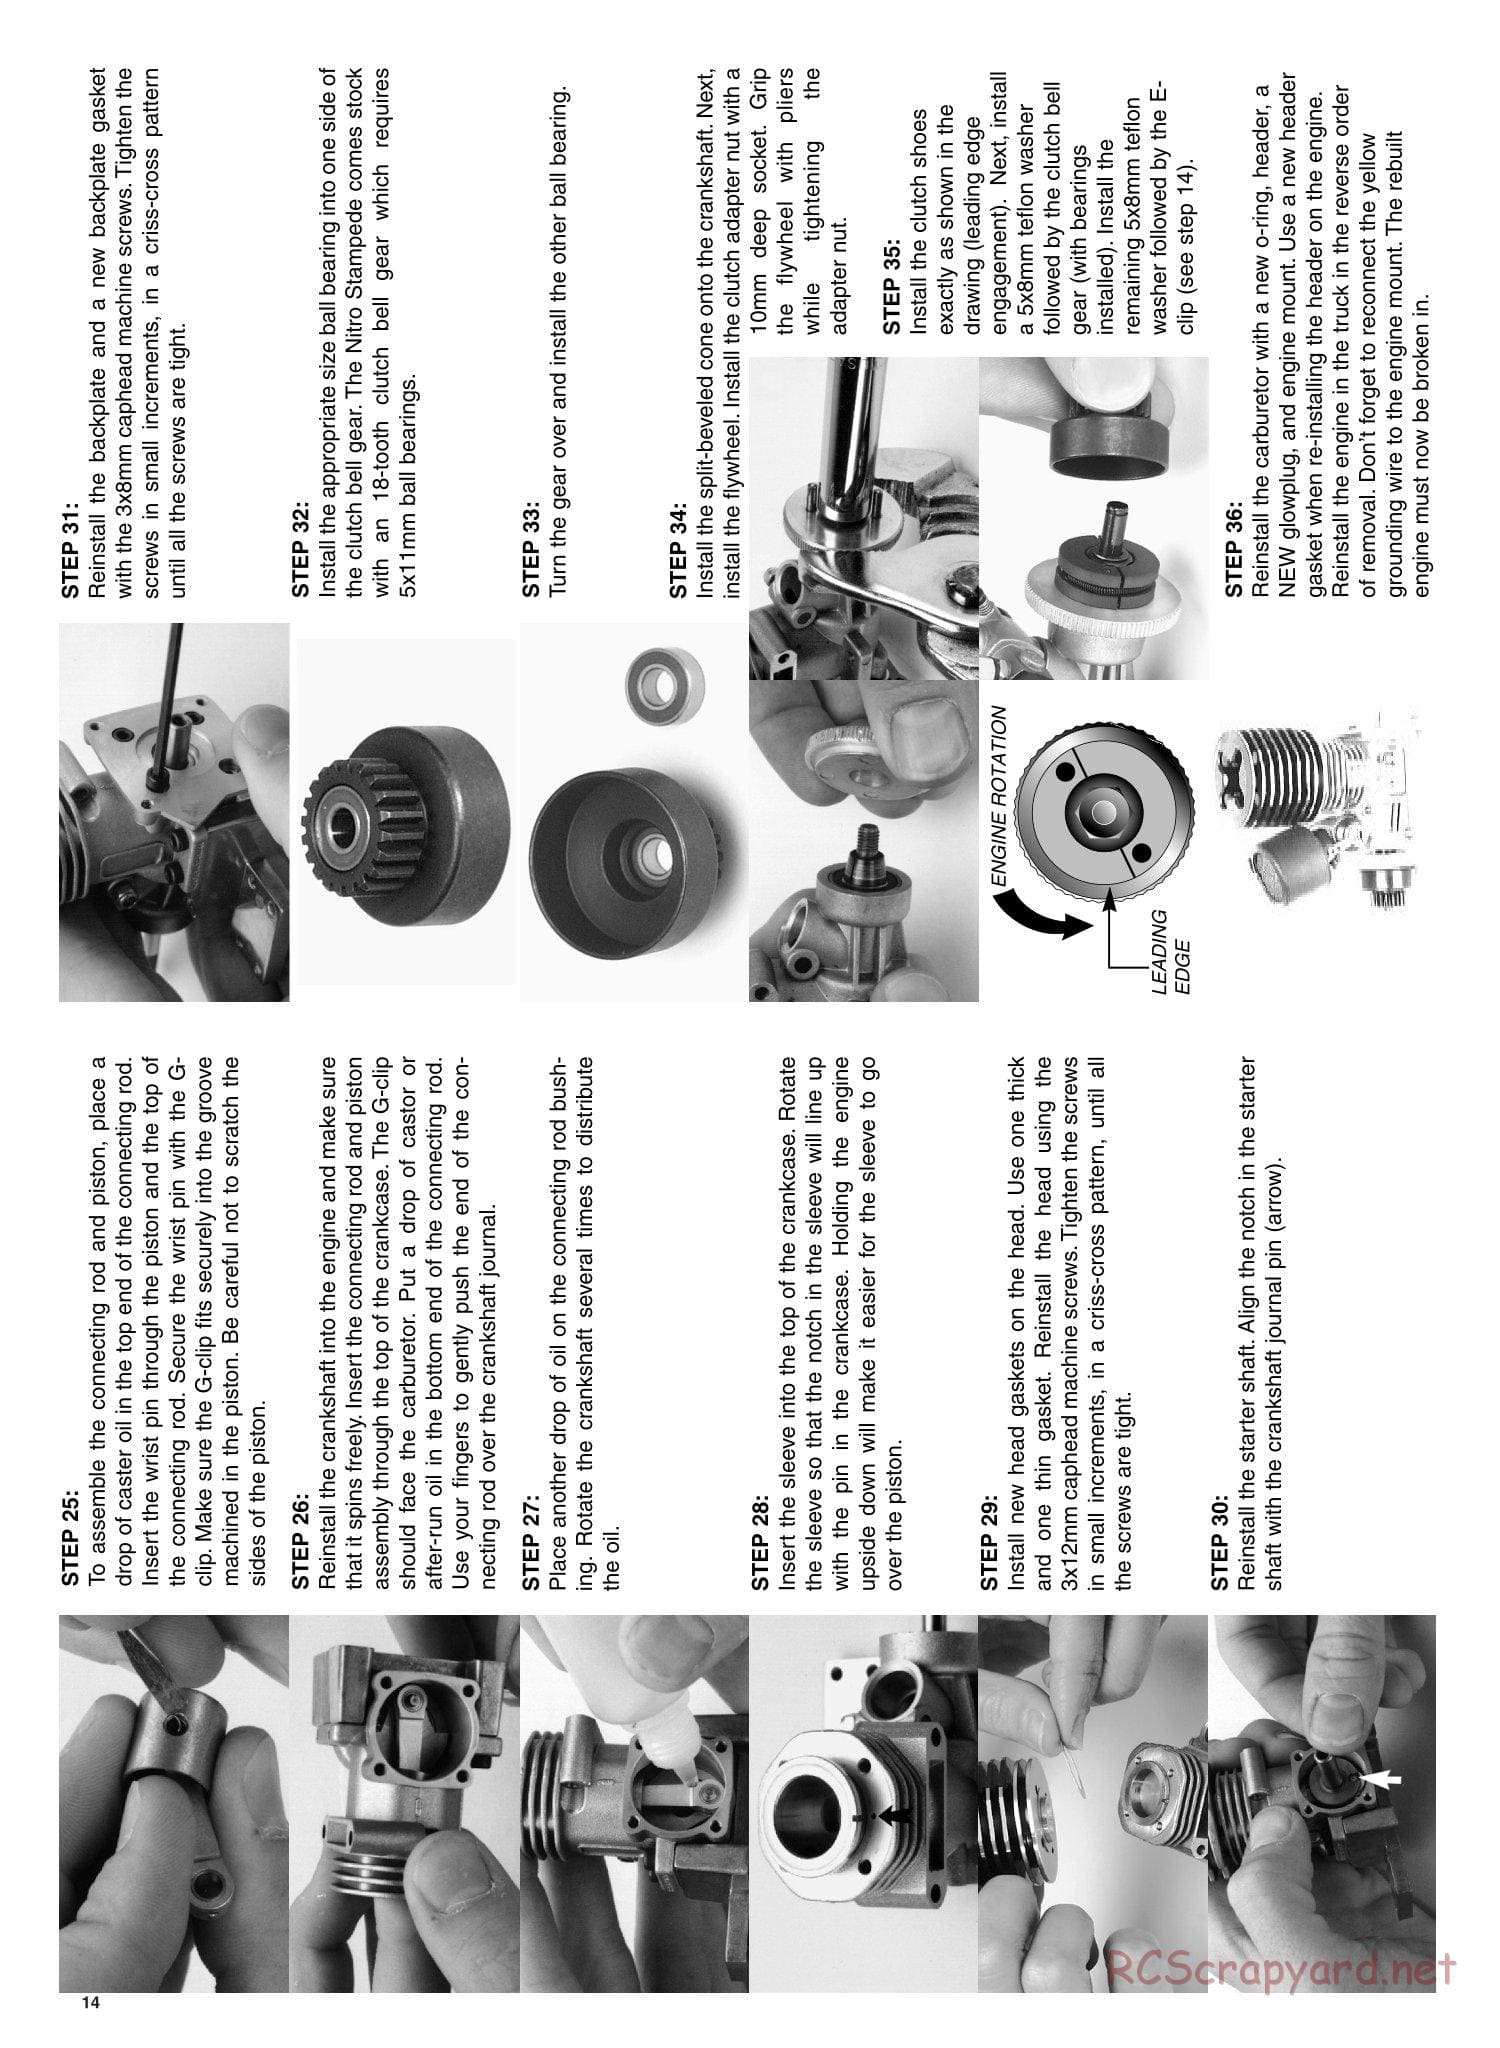 Traxxas - Nitro Rustler - Manual - Page 14